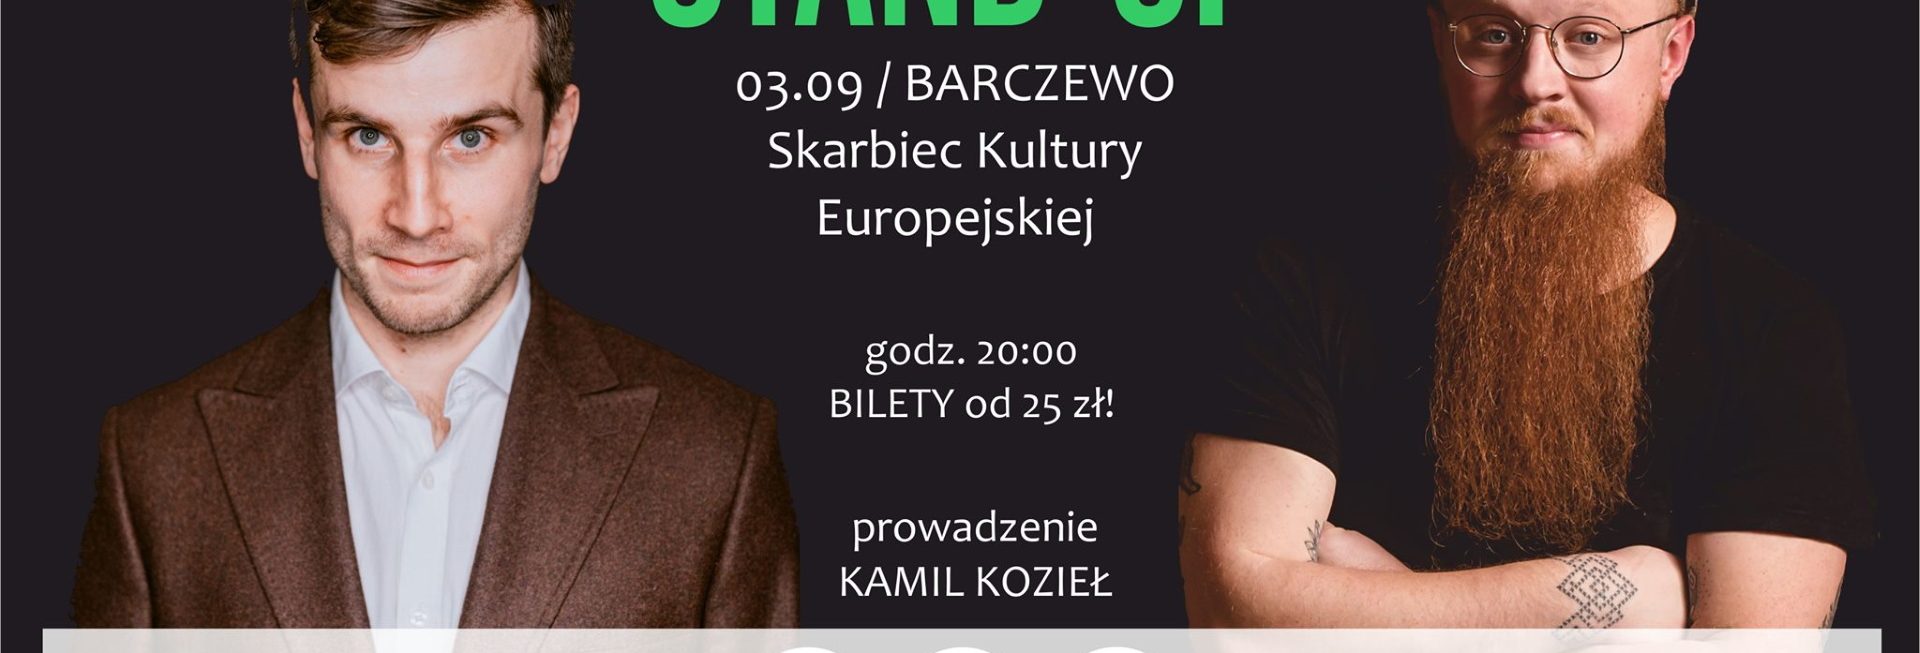 Plakat graficzny zapraszający do Barczewa na Stand-up: Bartosz Zalewski & Arkadiusz Jaksa Jakszewicz - Barczewo 2021. Na plakacie zdjęcia obu artystów.